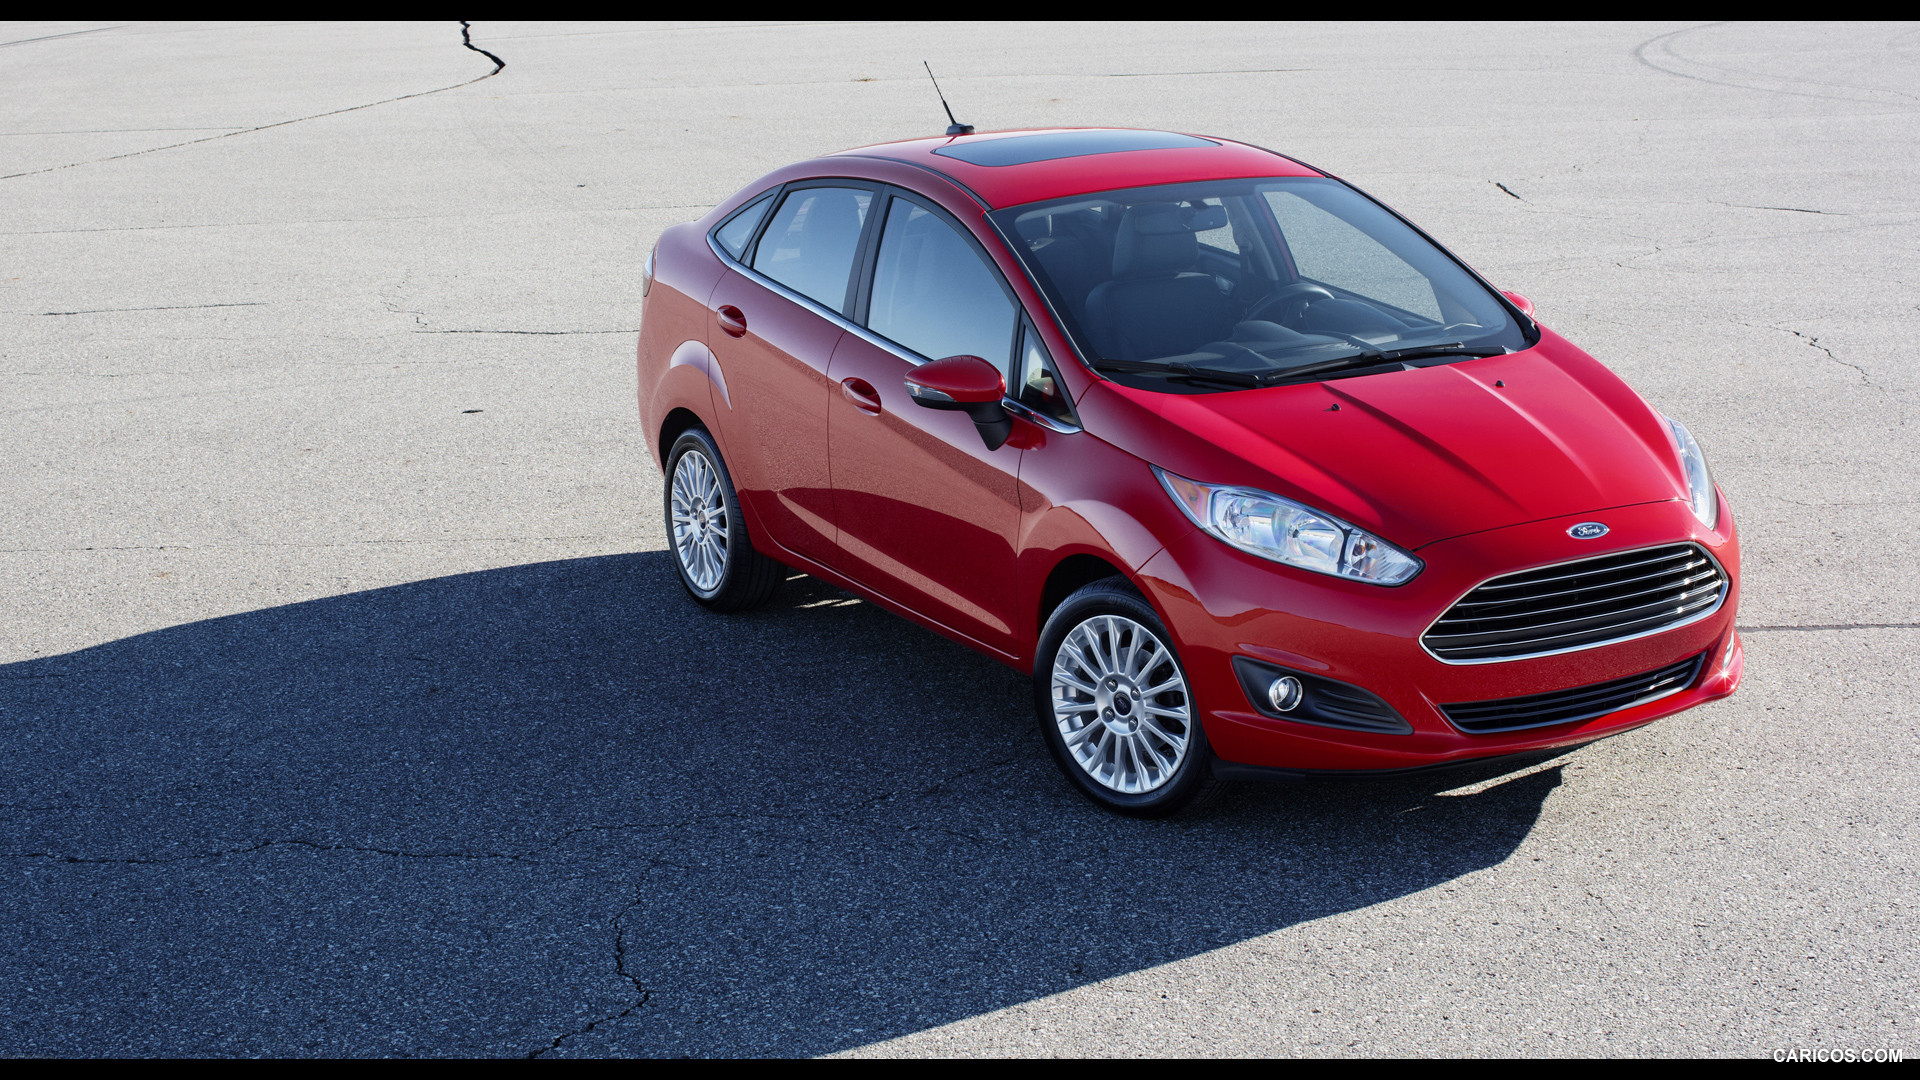 Ford Fusion (Форд Фьюжн) - Продажа, Цены, Отзывы, Фото ...